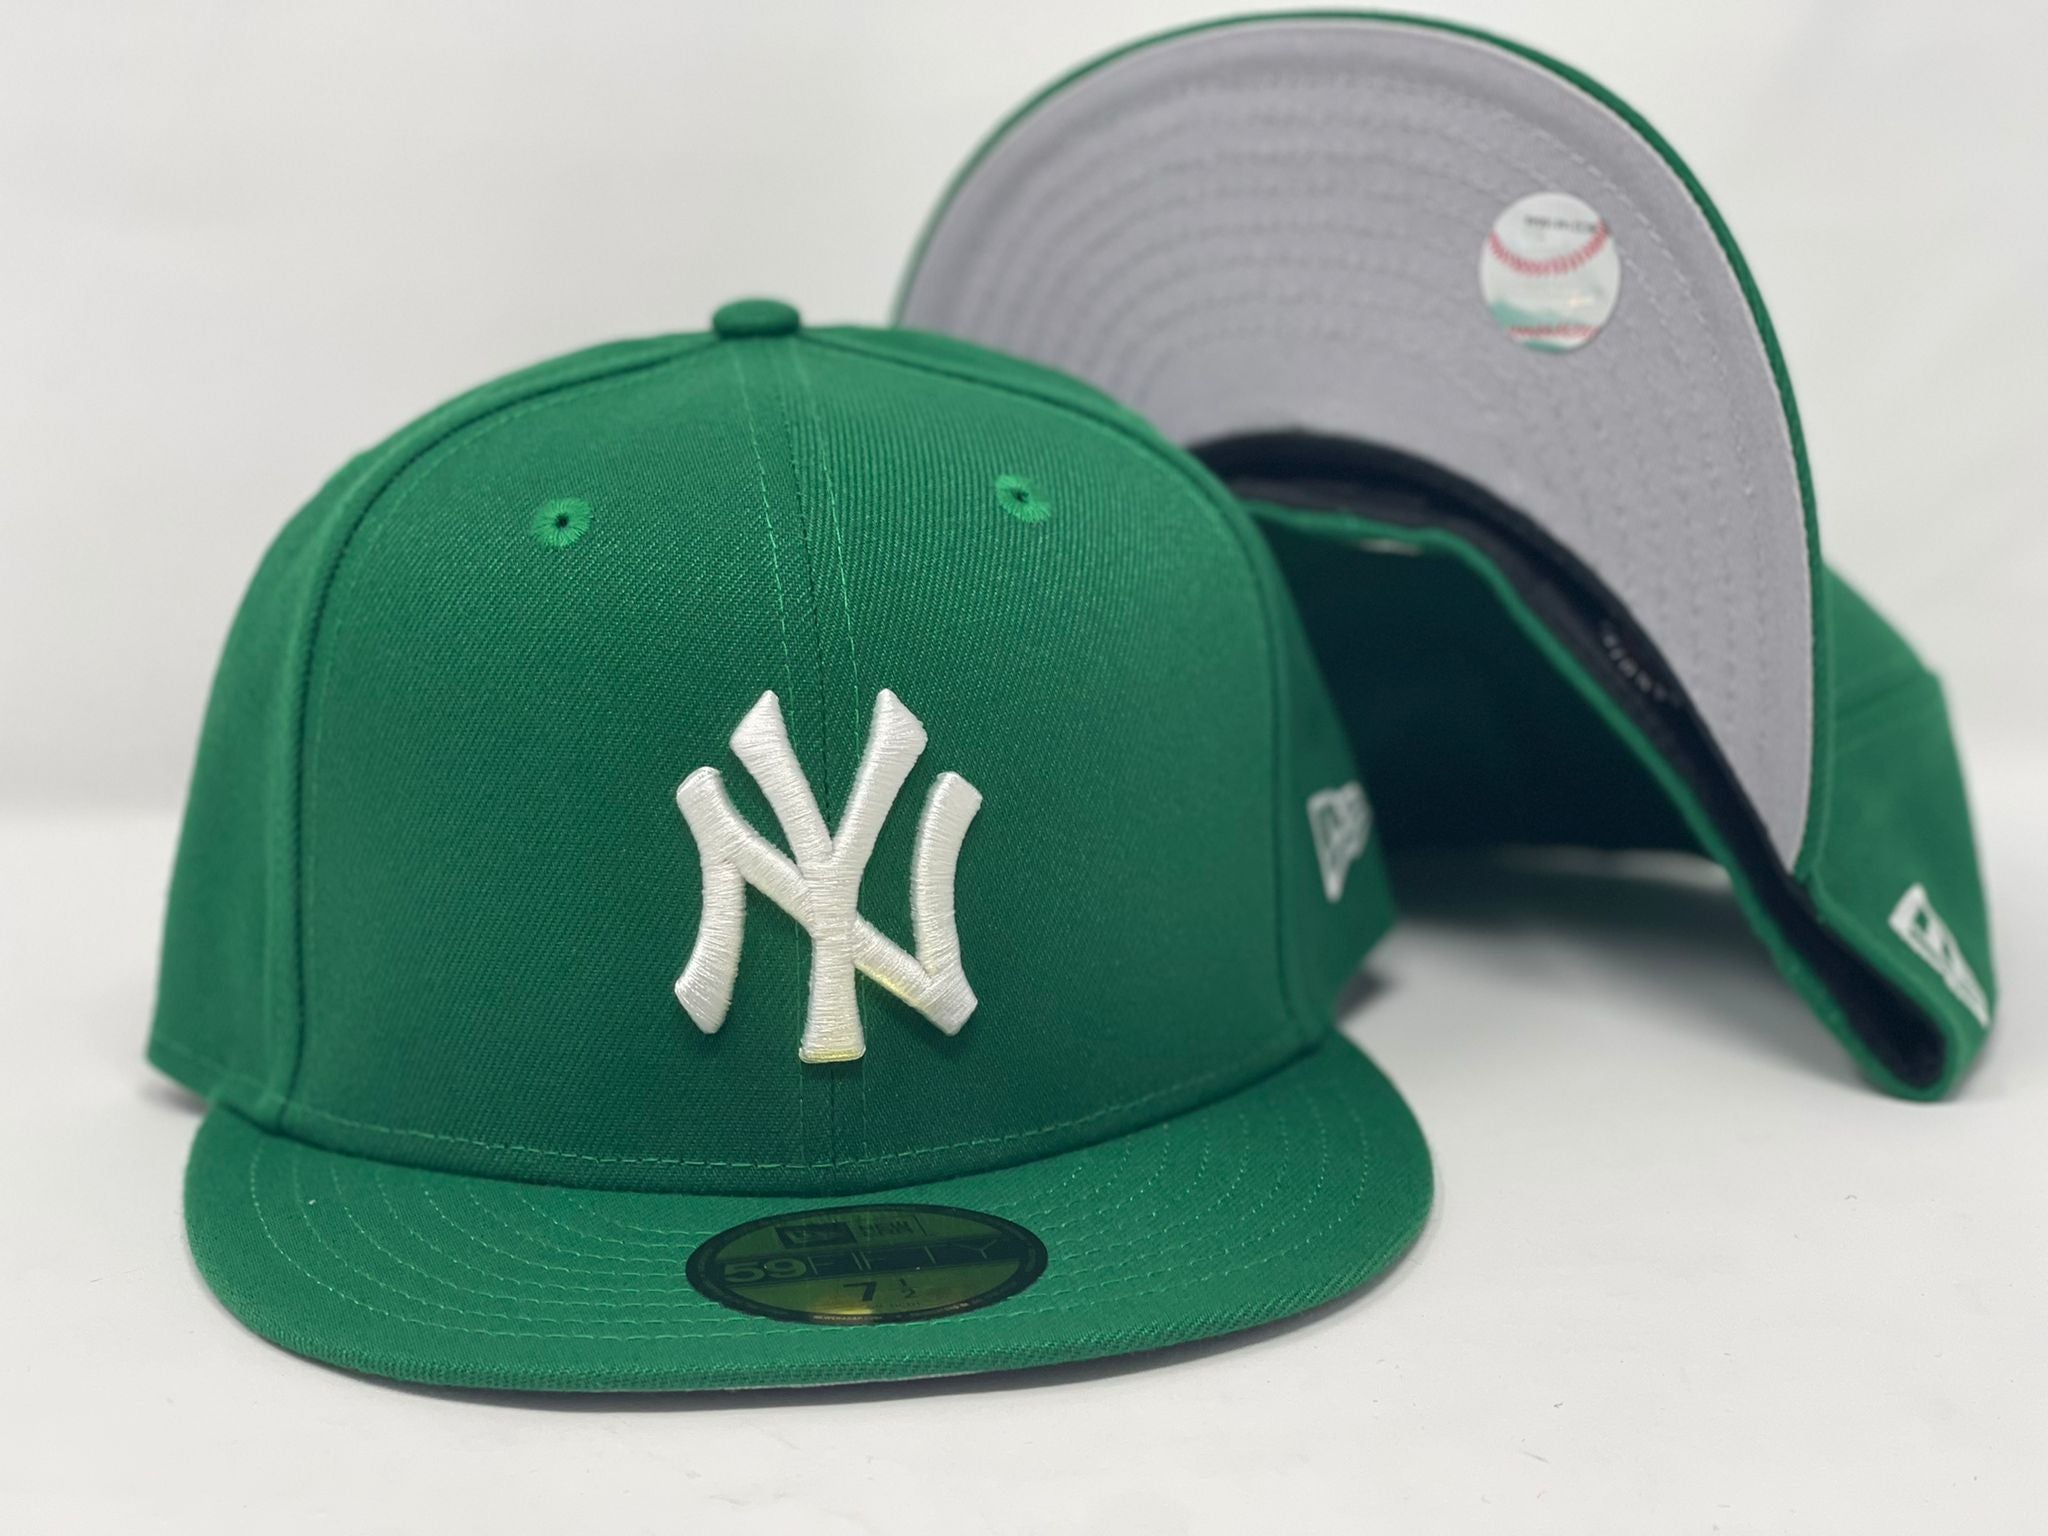 New Era - New York Yankees MLB Ice Cream Oversized T-Shirt - Green